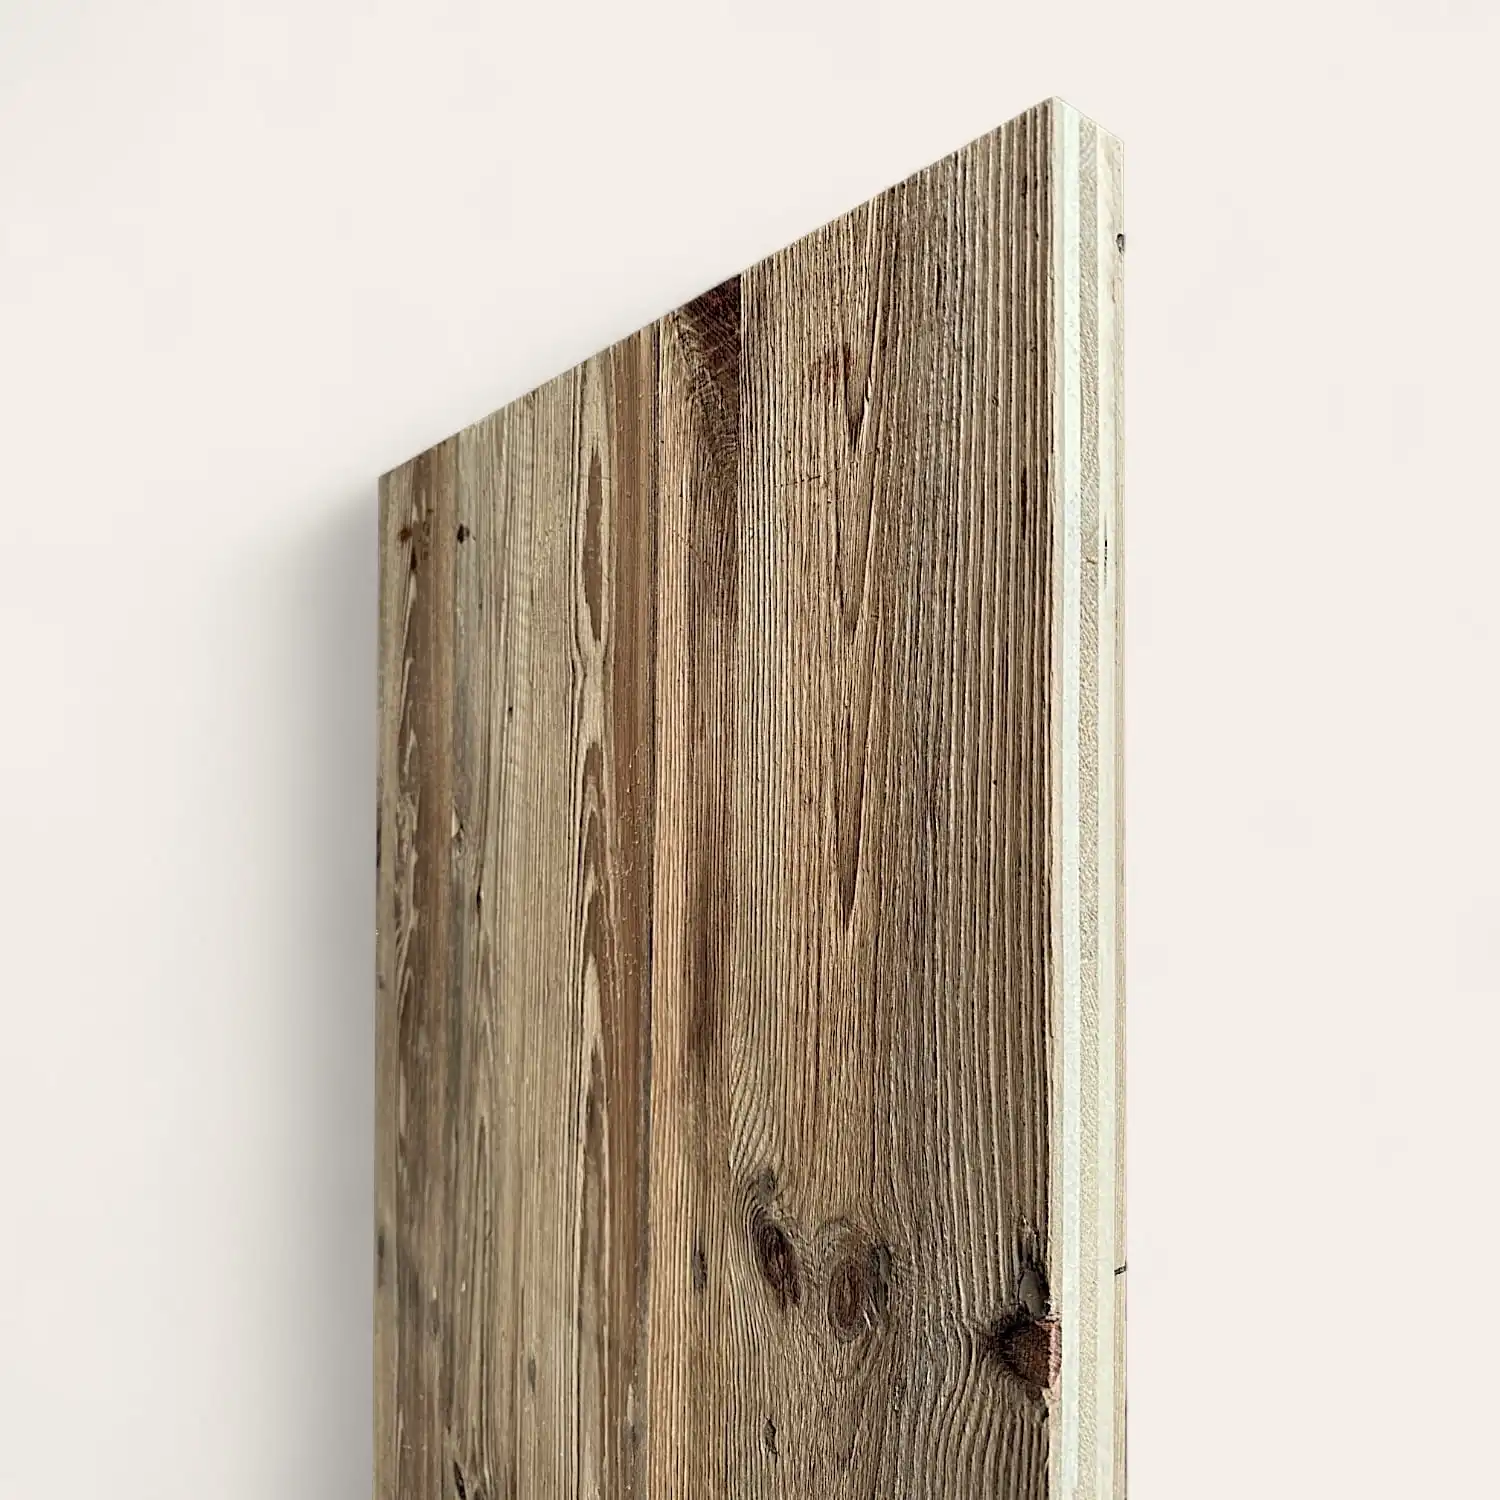  Vue latérale d'un panneau 5 plis monté sur un mur blanc, montrant les grains de bois et les imperfections naturelles. 